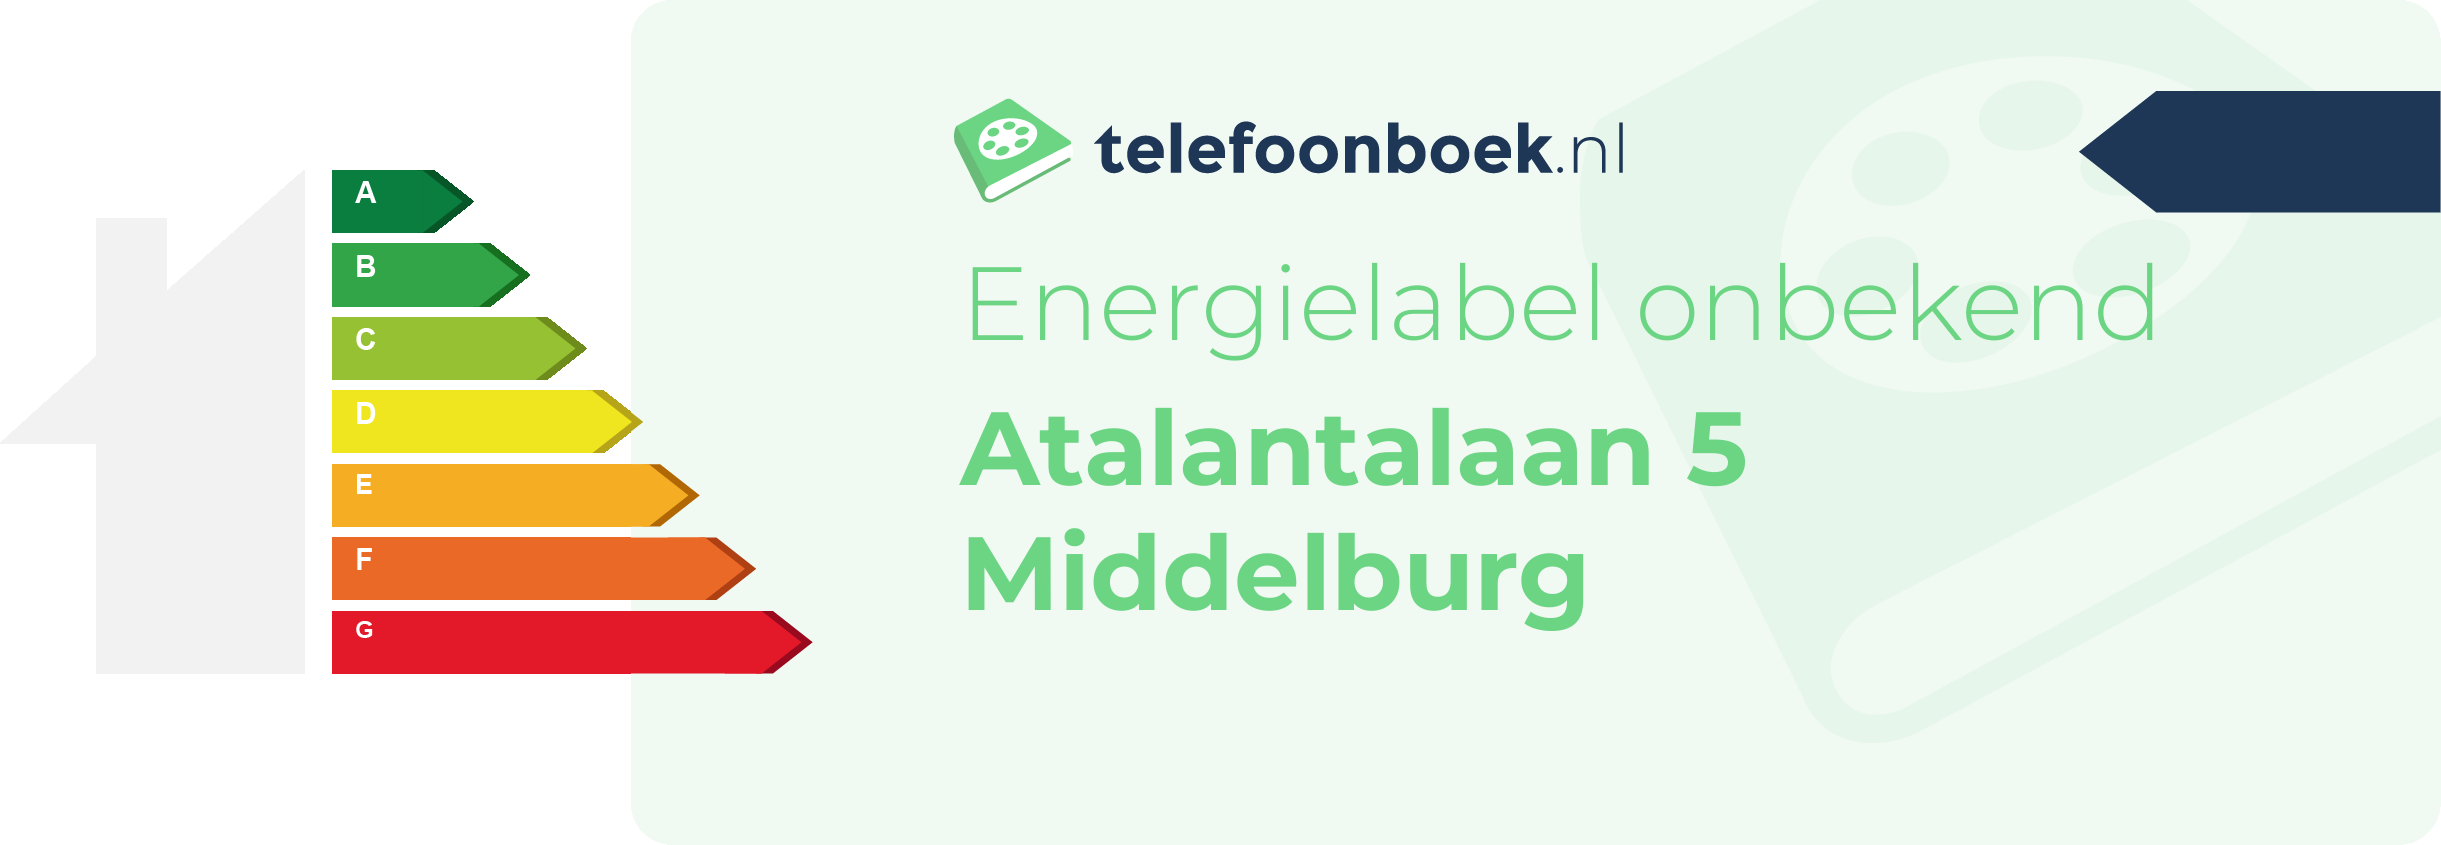 Energielabel Atalantalaan 5 Middelburg